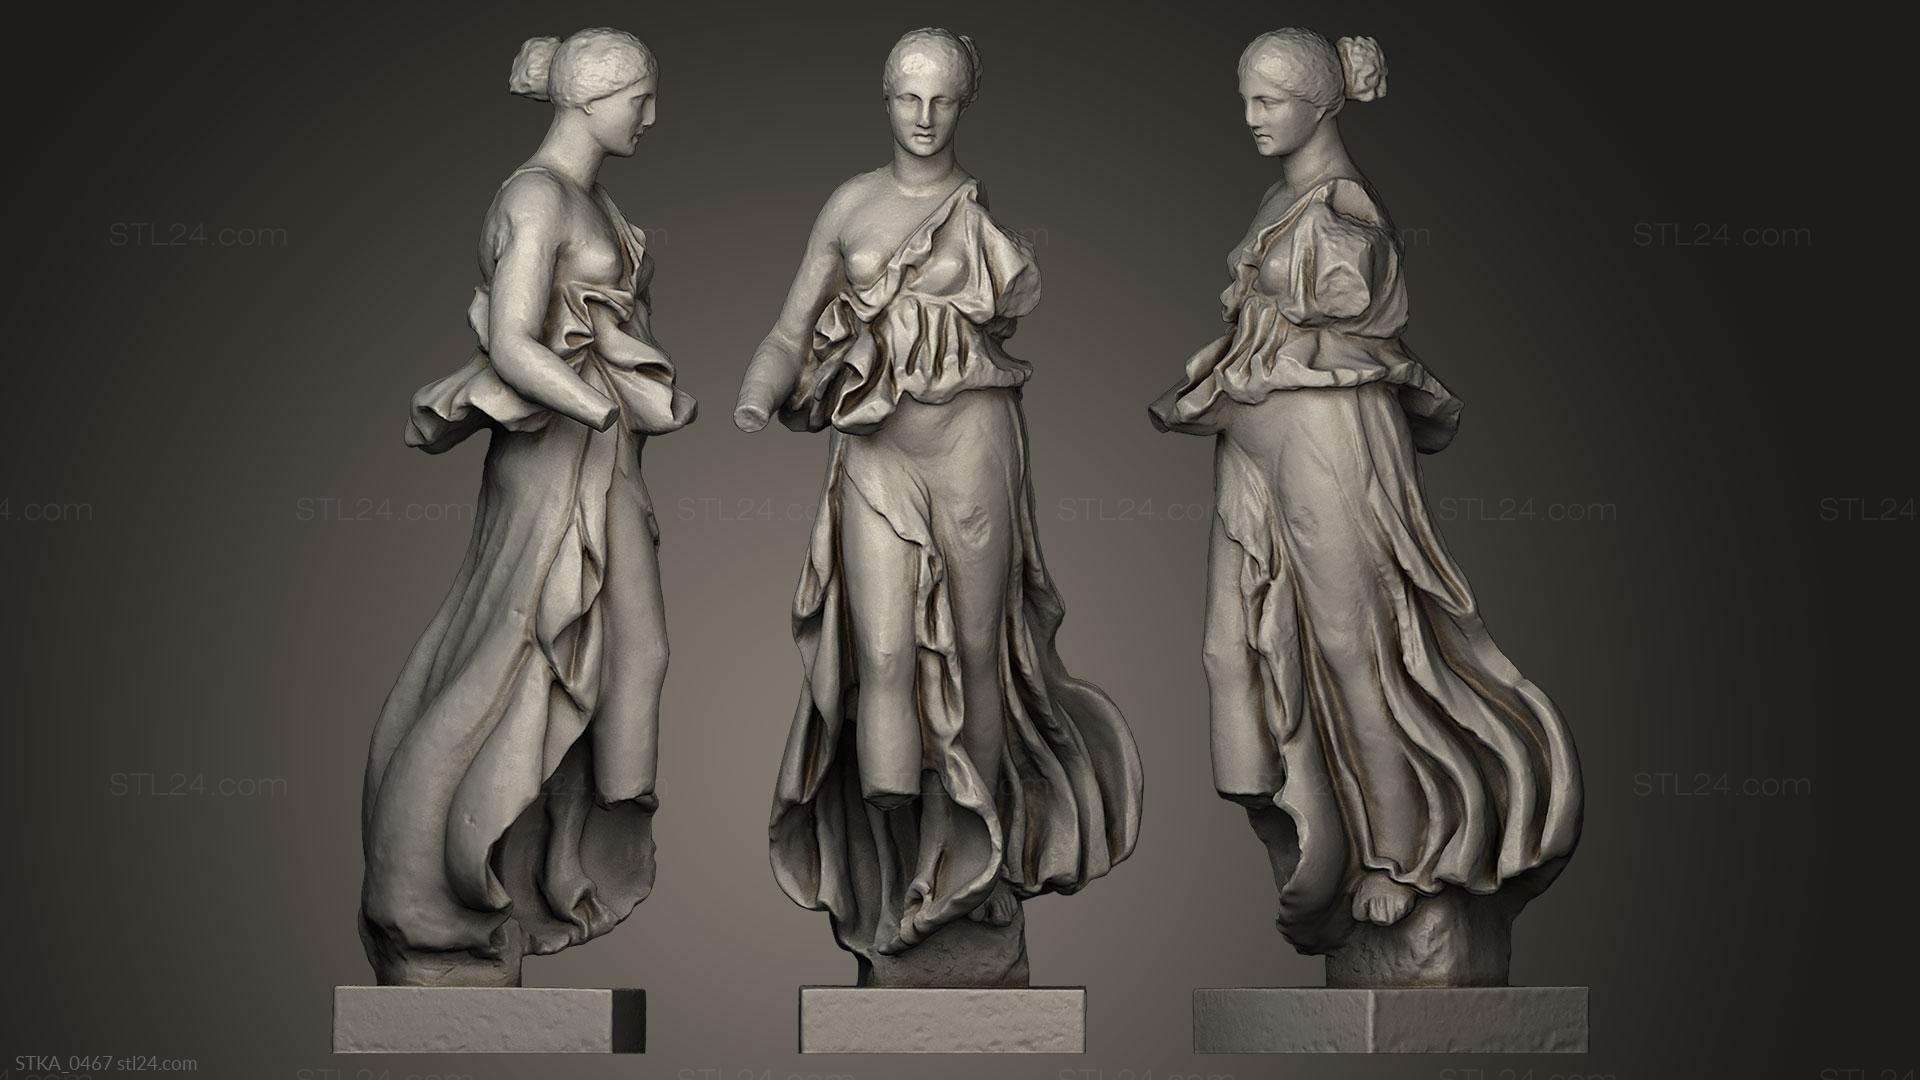 Статуи античные и исторические (Ника из храма Артемиды Эпидавр, STKA_0467) 3D модель для ЧПУ станка